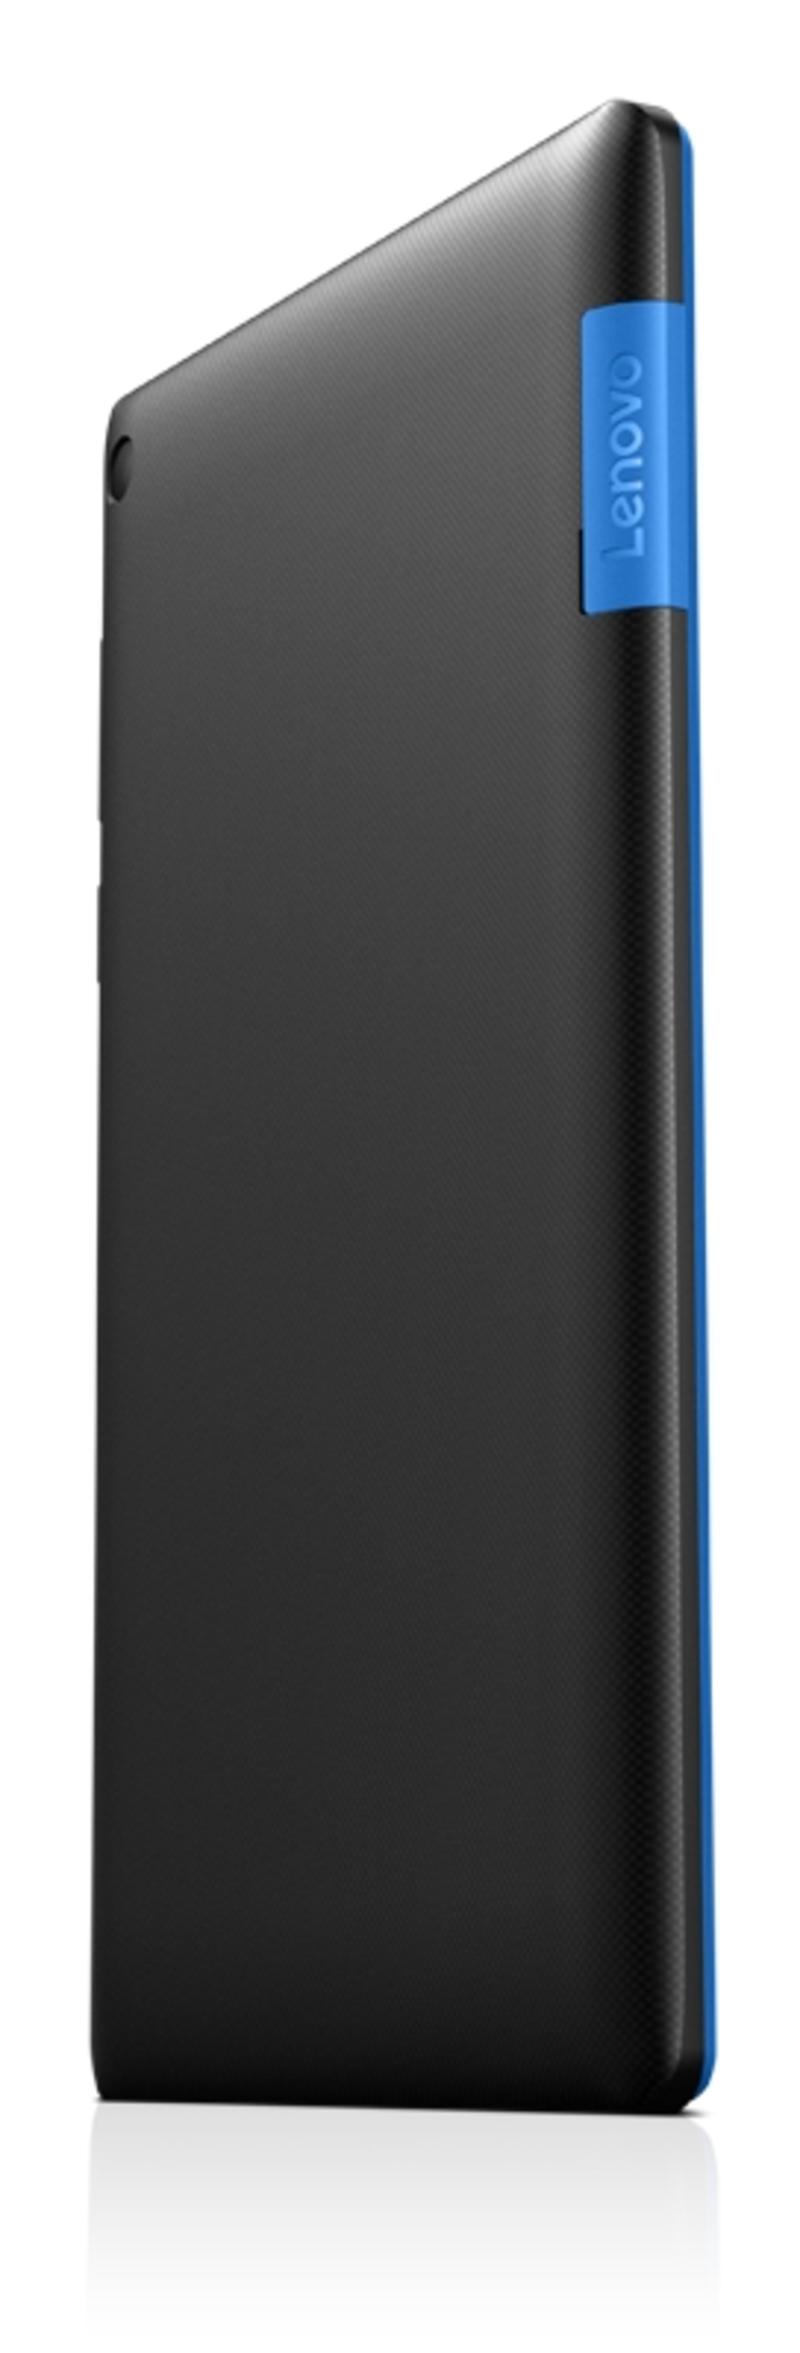 В Украине стартовали продажи легкого и доступного планшета Lenovo Tab 3-710 / lenovo.com